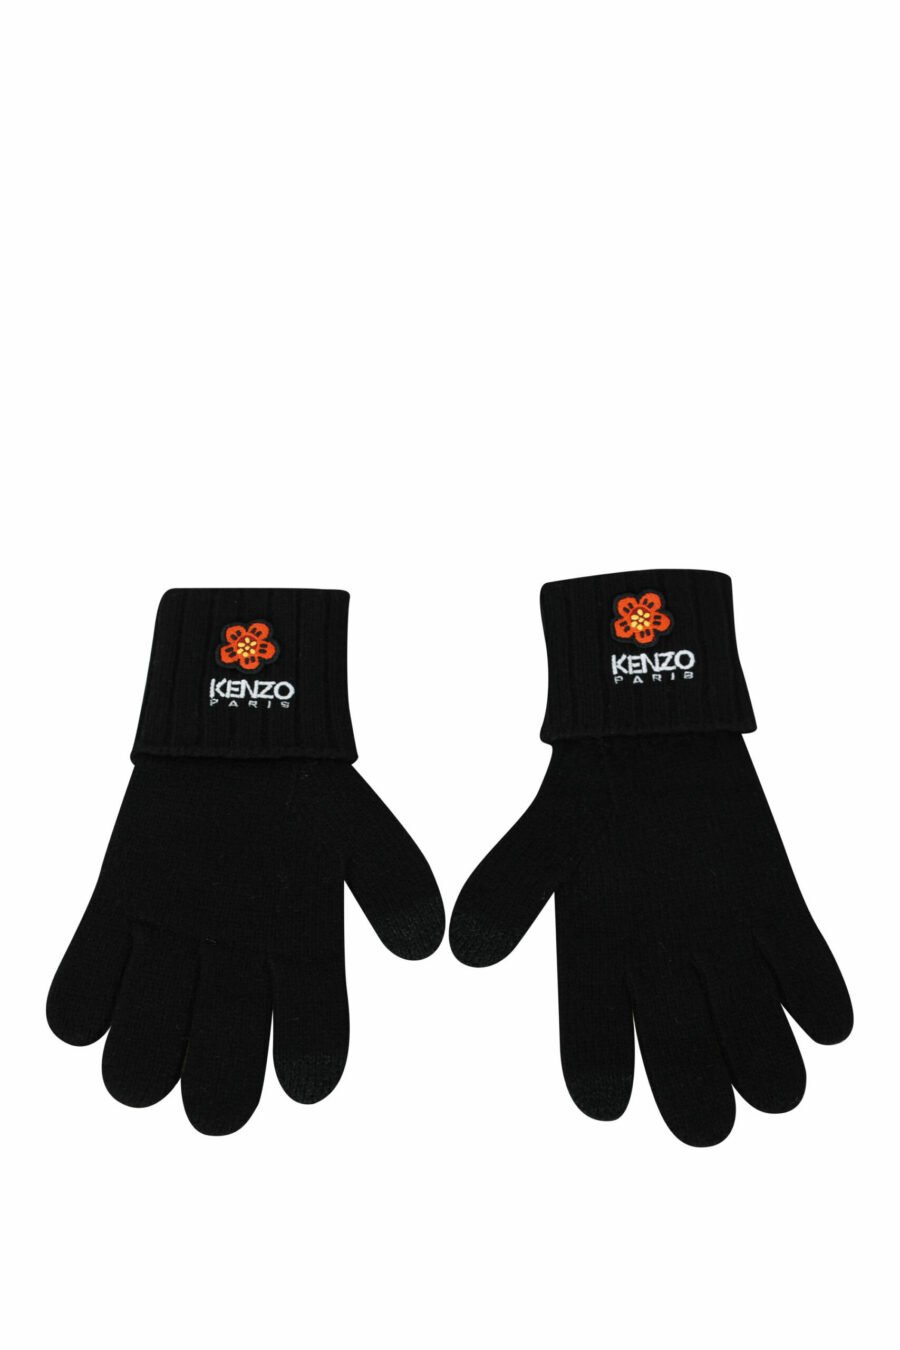 Schwarze Handschuhe mit "boke flower" Logo - 3612230566804 1 skaliert